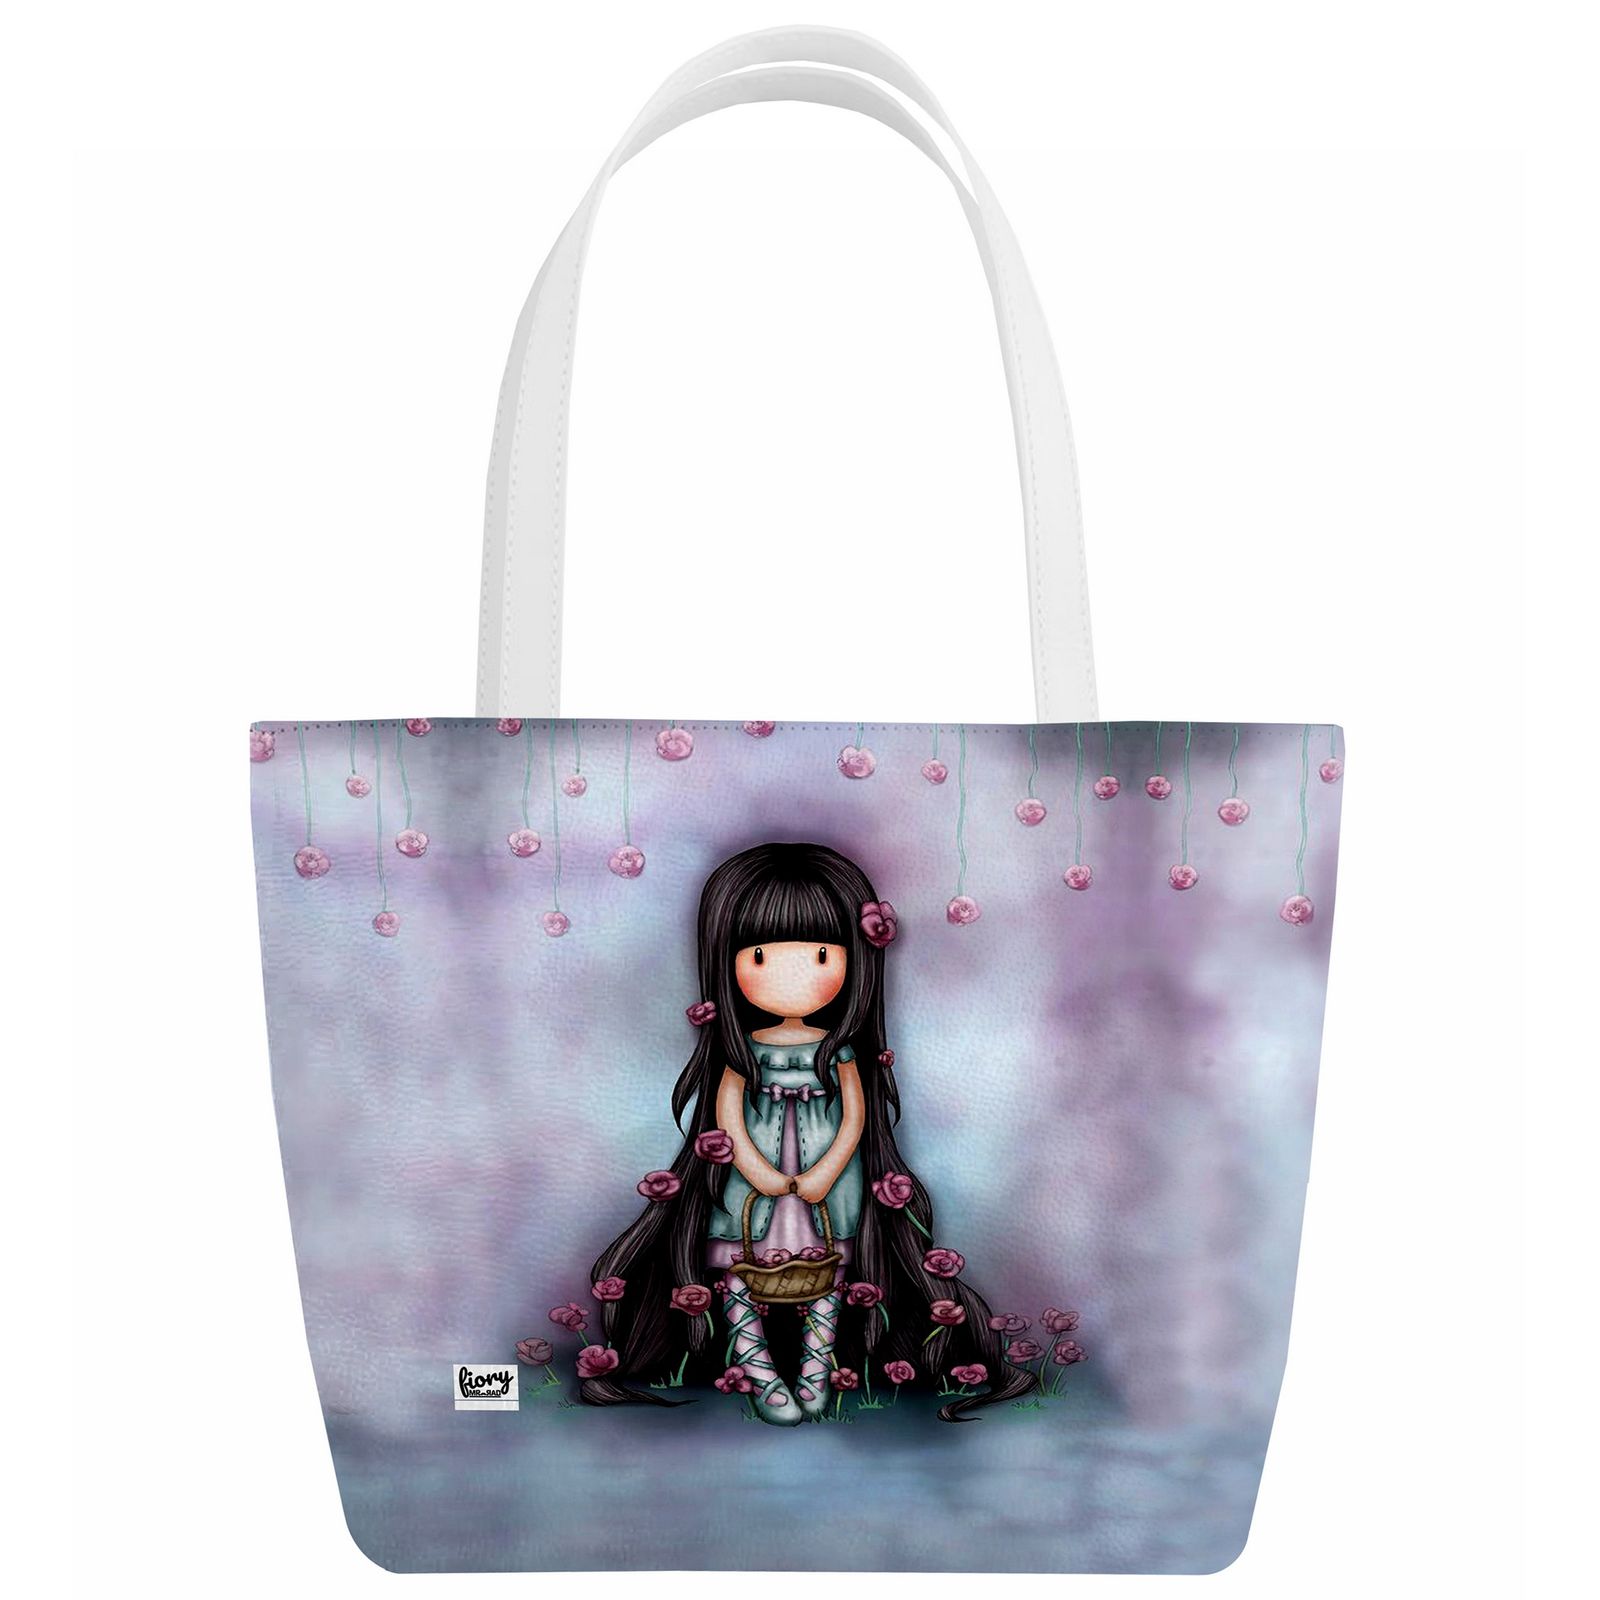 کیف دستی بچگانه فیوری مدل دختر گل فروش کد 2436 -  - 1